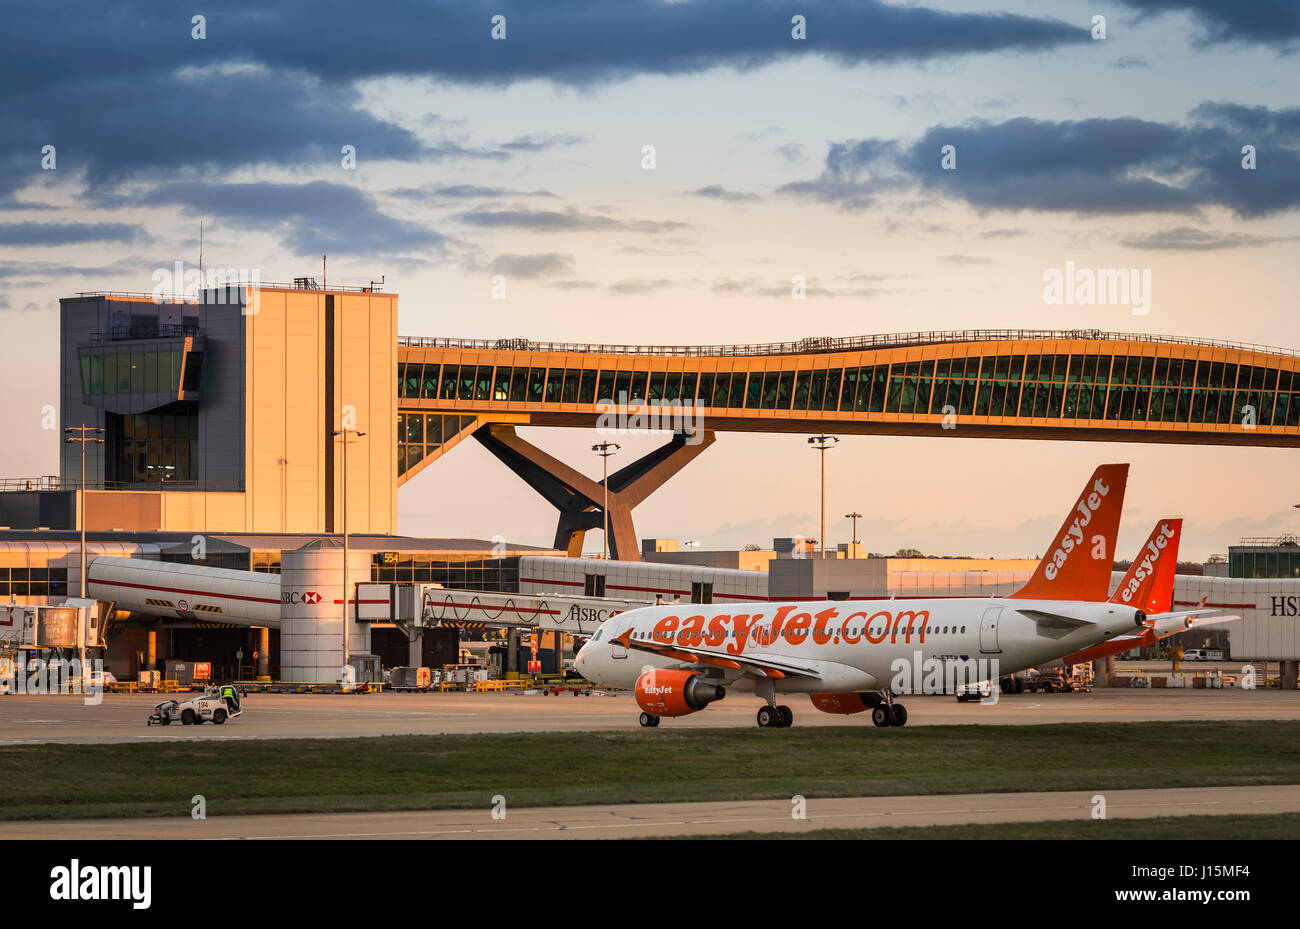 Avion Easyjet en attente sur le tarmac à l'aéroport de Gatwick, près de Londres, Royaume-Uni. Banque D'Images